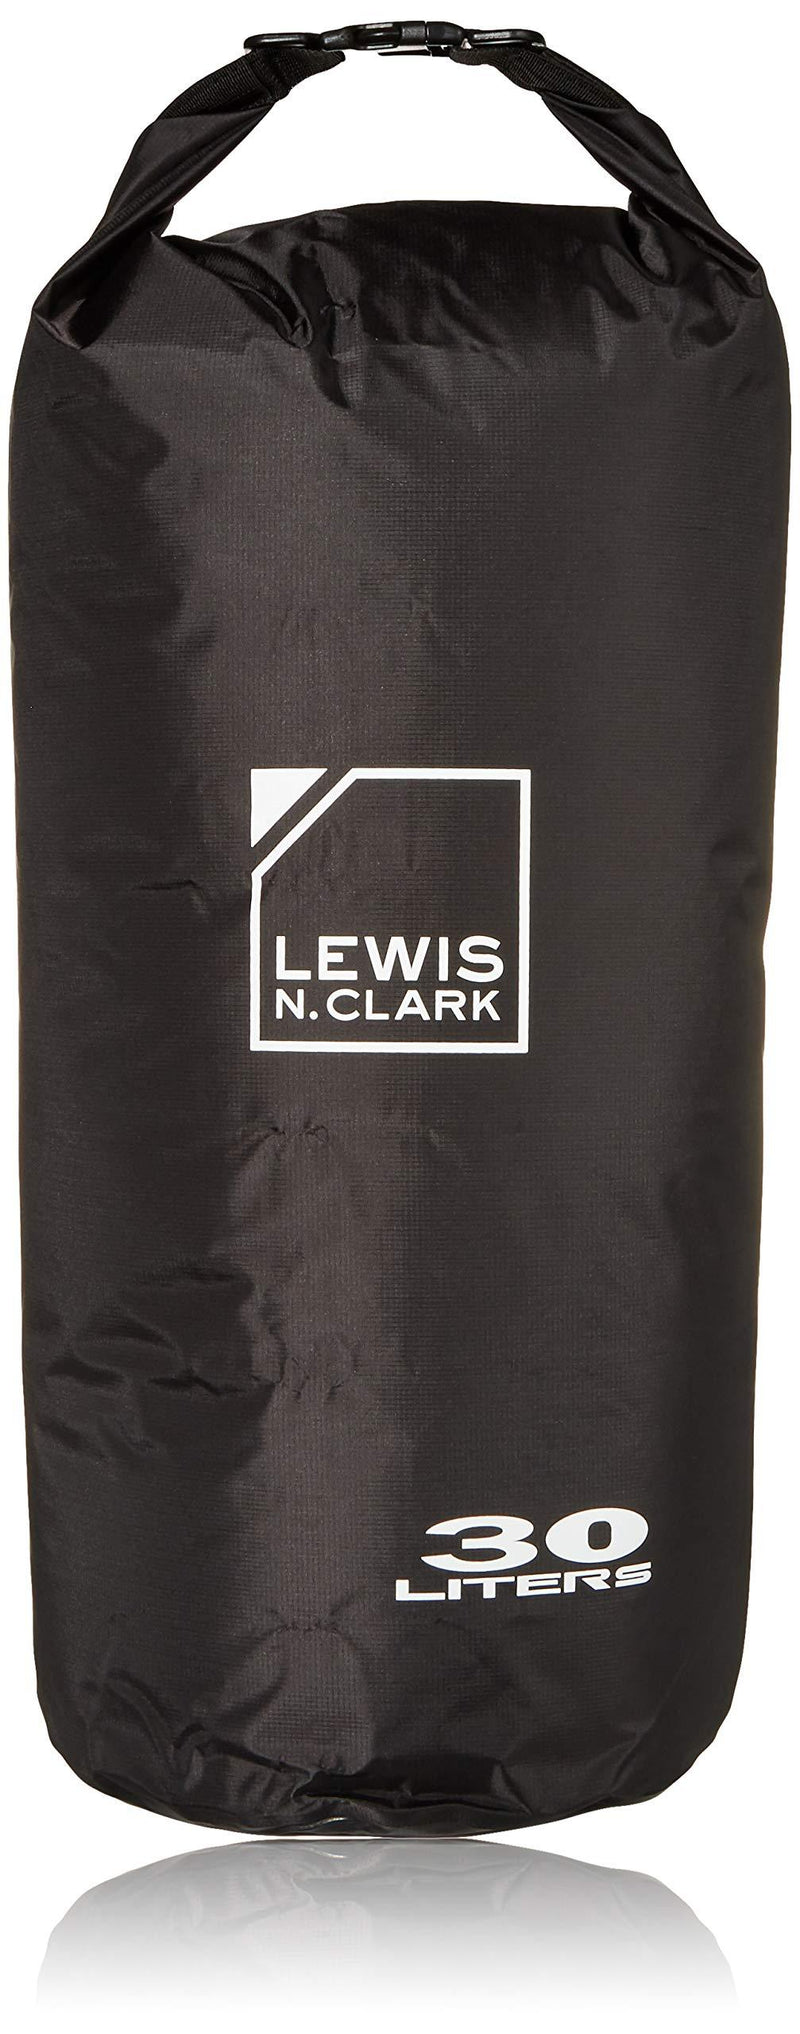 [AUSTRALIA] - Lewis N. Clark Lightweight Waterproof Dry Bag for Women + Men Leakproof Lining, Rolltop Closure Black 30L 